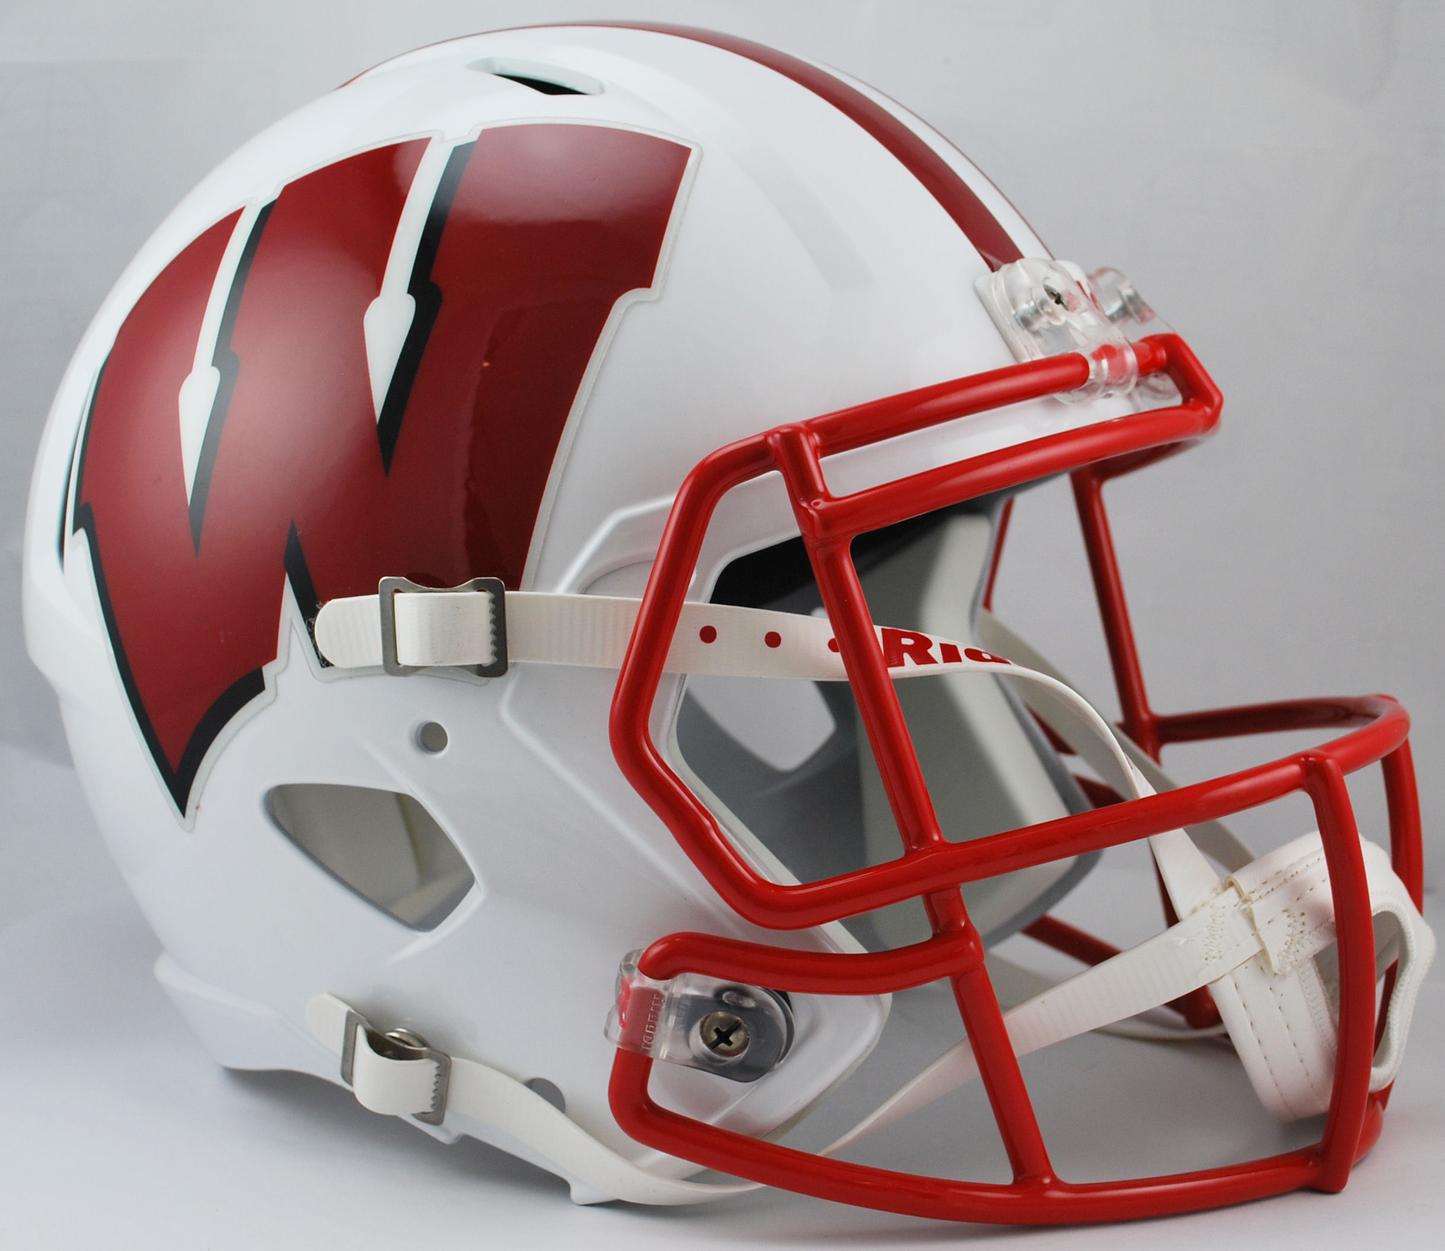 Wisconsin Badgers full size replica helmet